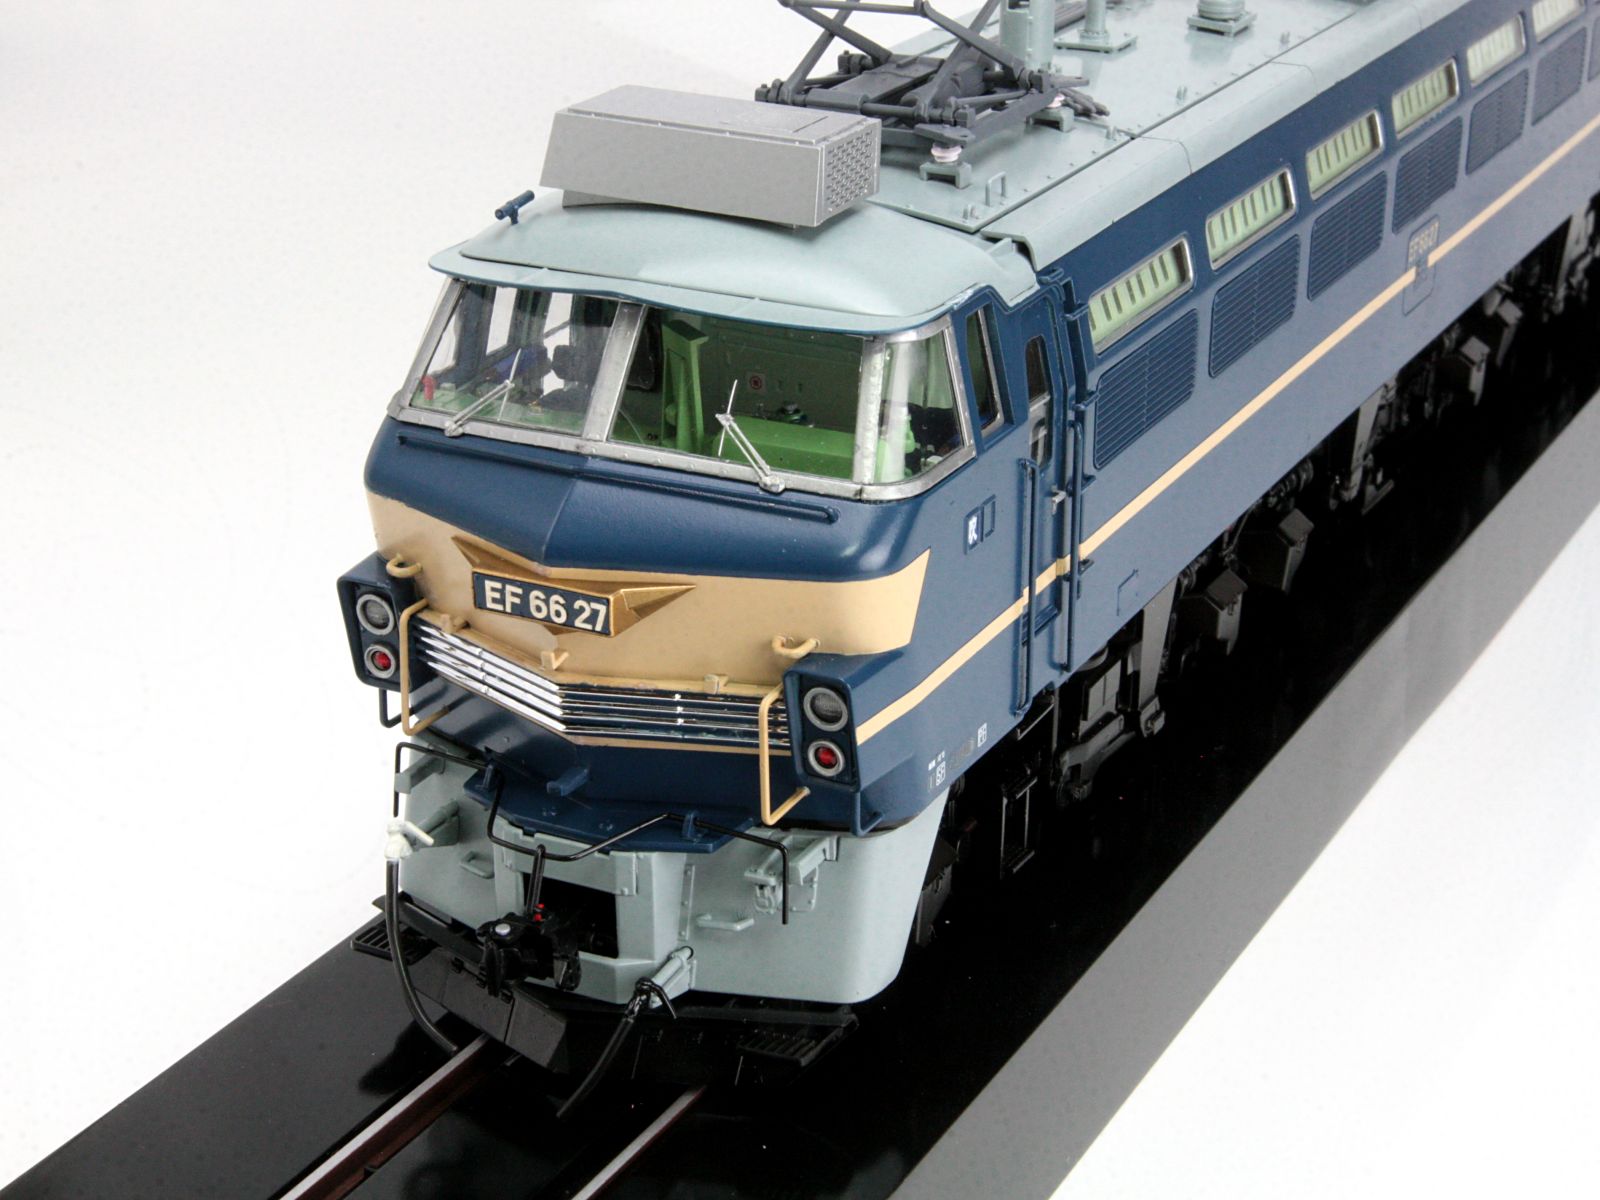 アオシマ文化教材社 EF66 27号機タイプ 完成品 - プラモデル